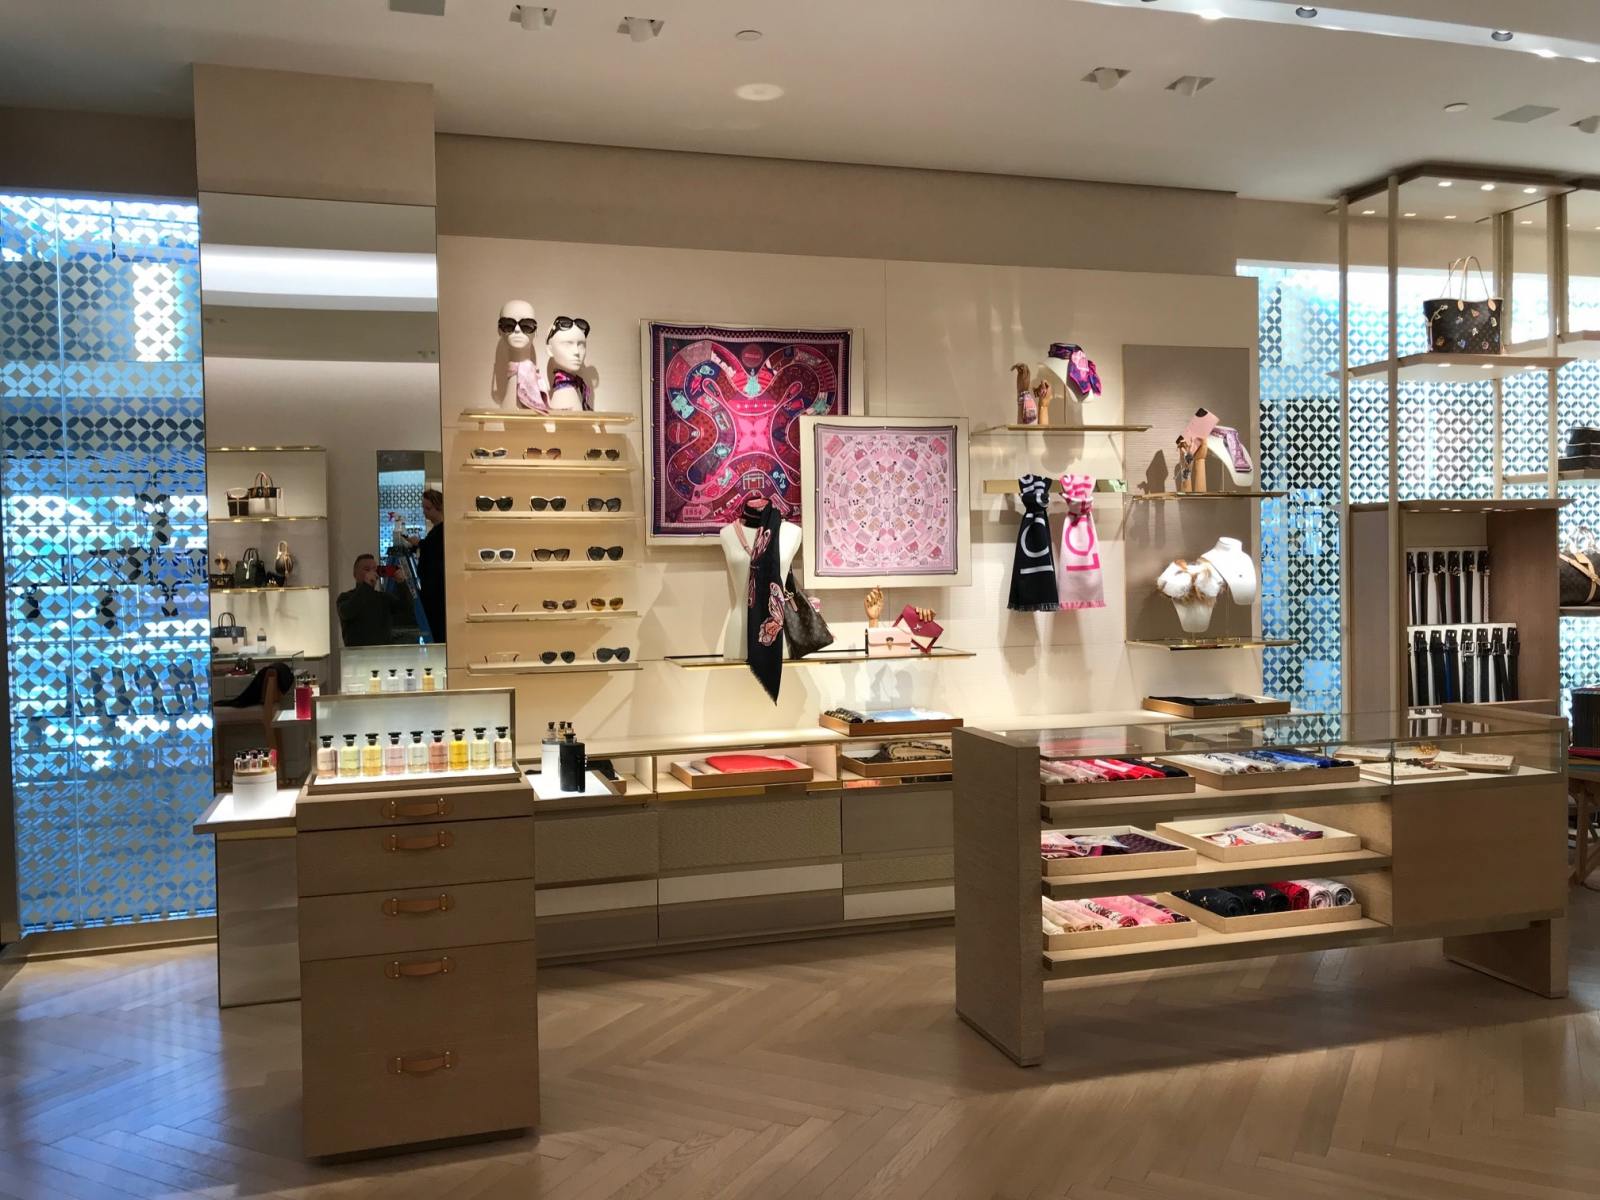 Louis Vuitton boutique - Daniel DeMarco & Associates Inc.